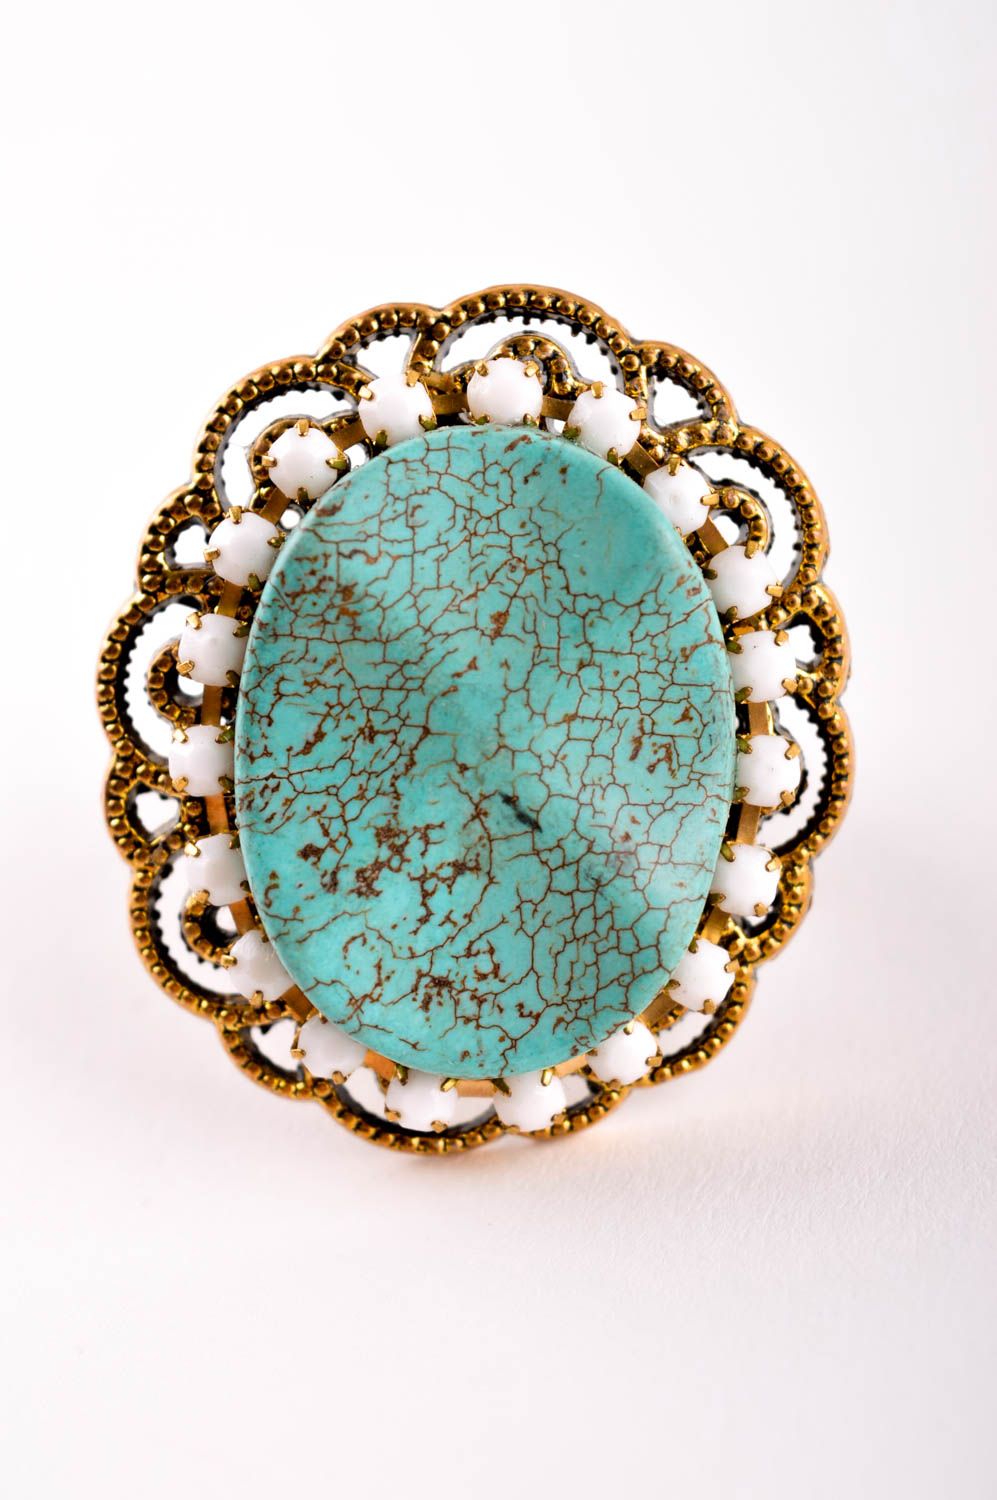 Женское кольцо хенд мейд красивое кольцо бижутерия с натуральными камнями бирюза фото 2